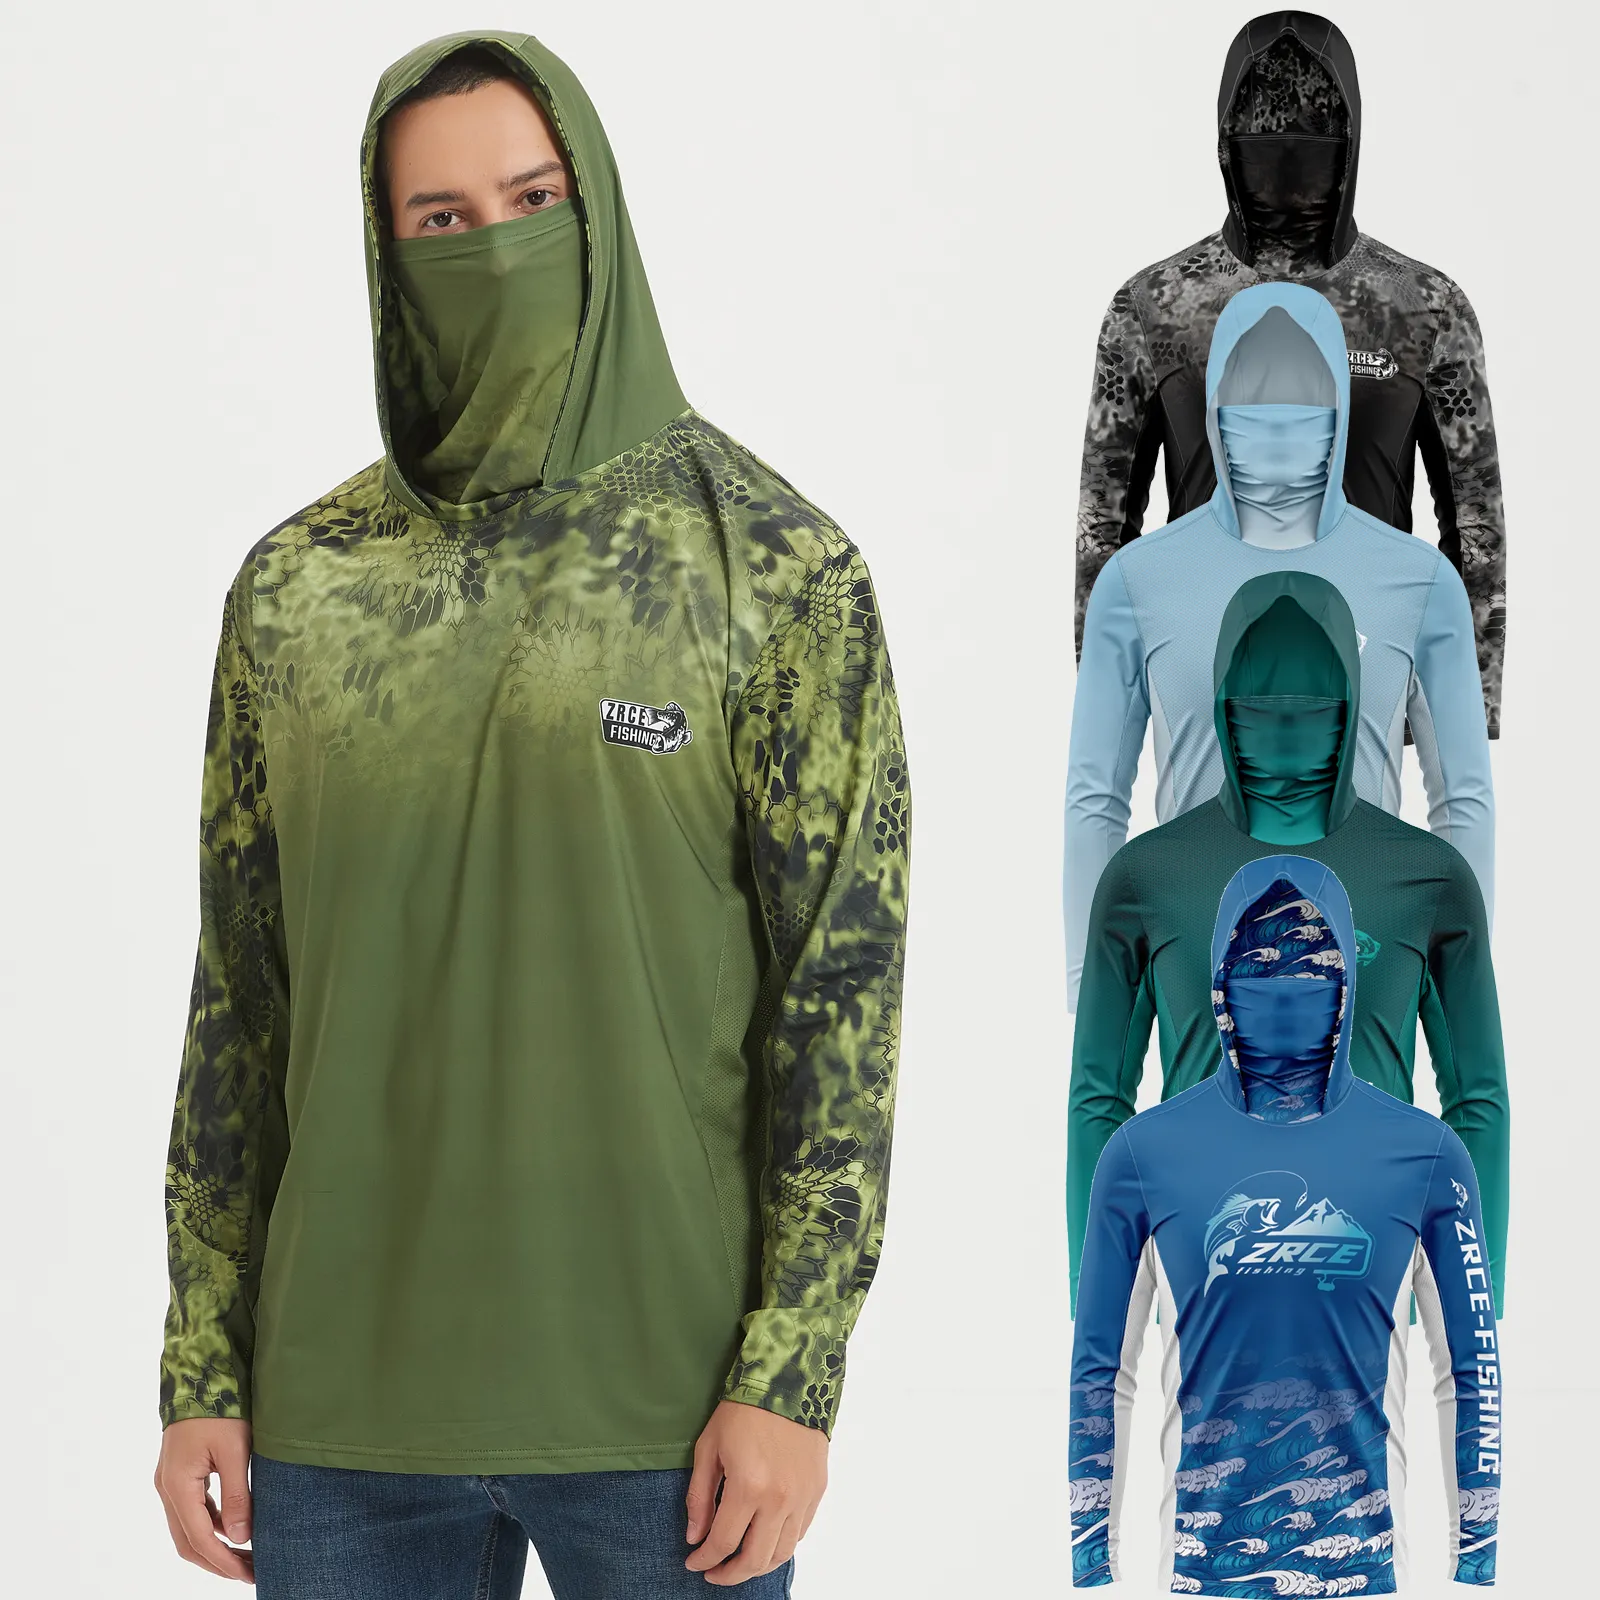 Fabrika toptan Polyester balıkçılık gömlek uzun kollu balıkçılık formalar özel baskı süblimasyon hızlı kuru balıkçılık kıyafetleri